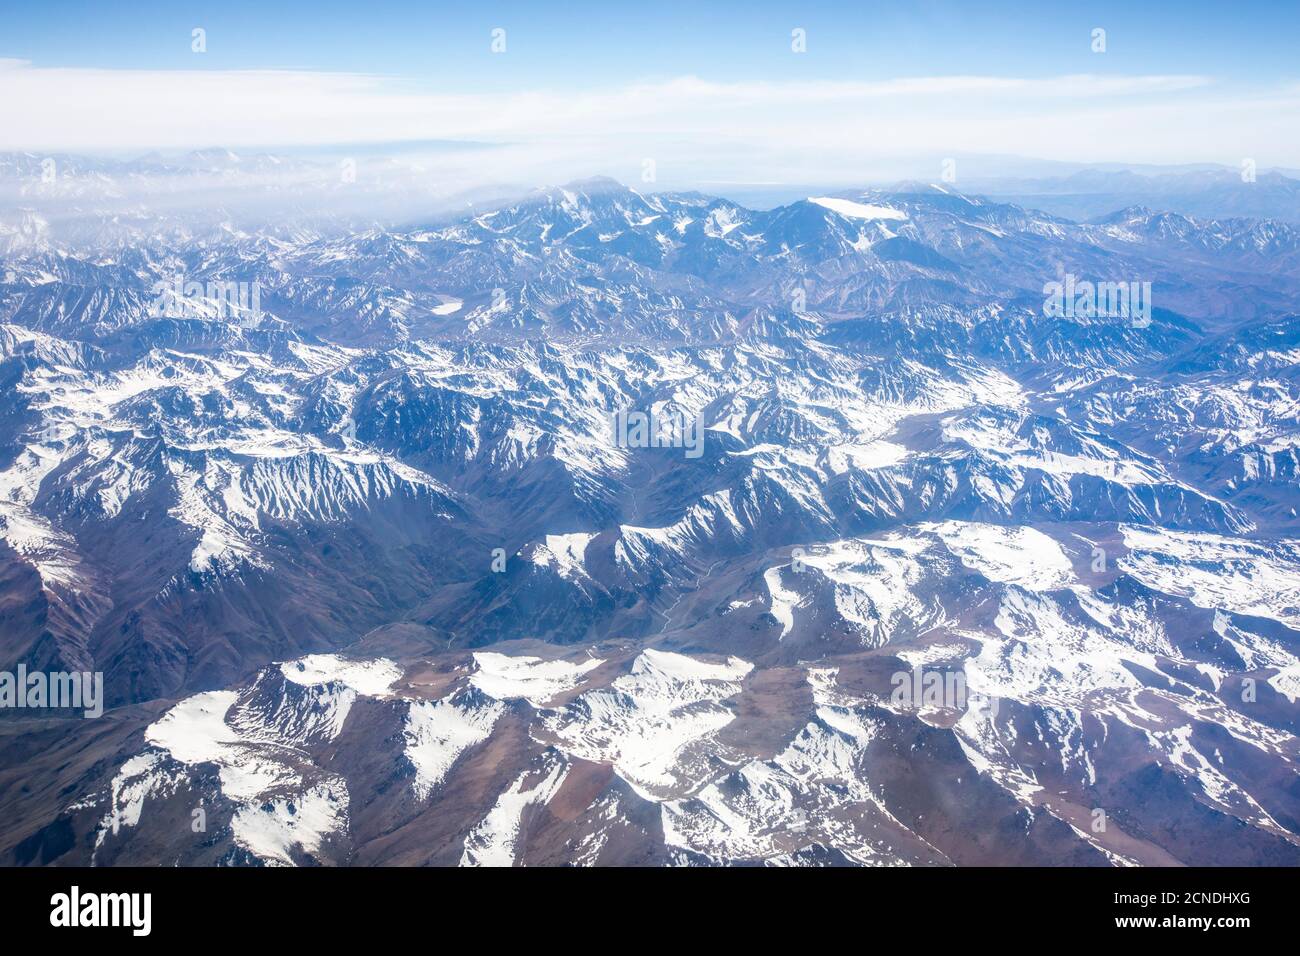 Vue aérienne de la chaîne montagneuse des Andes enneigée, Chili Banque D'Images